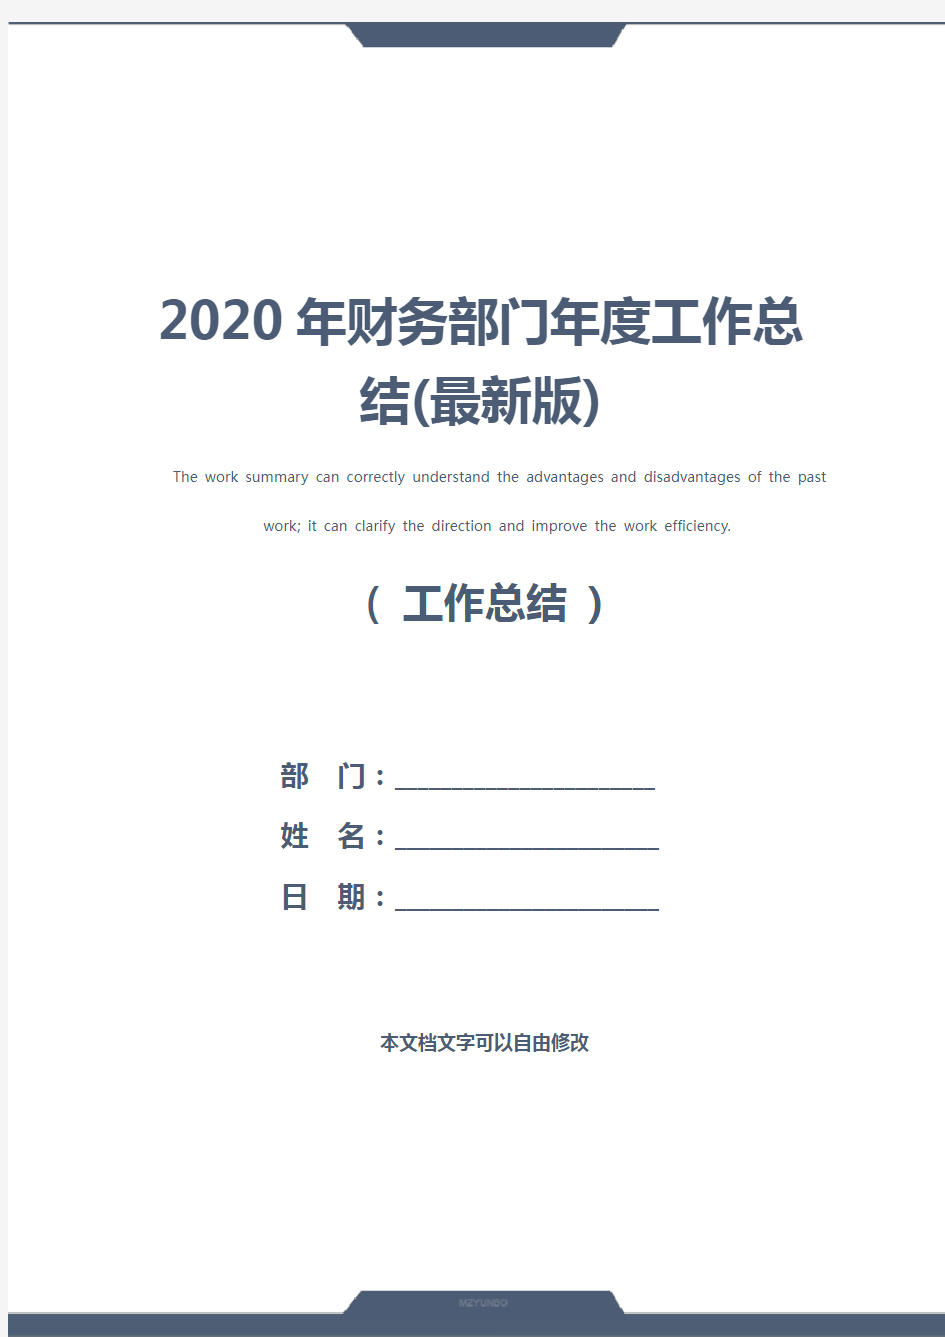 2020年财务部门年度工作总结(最新版)